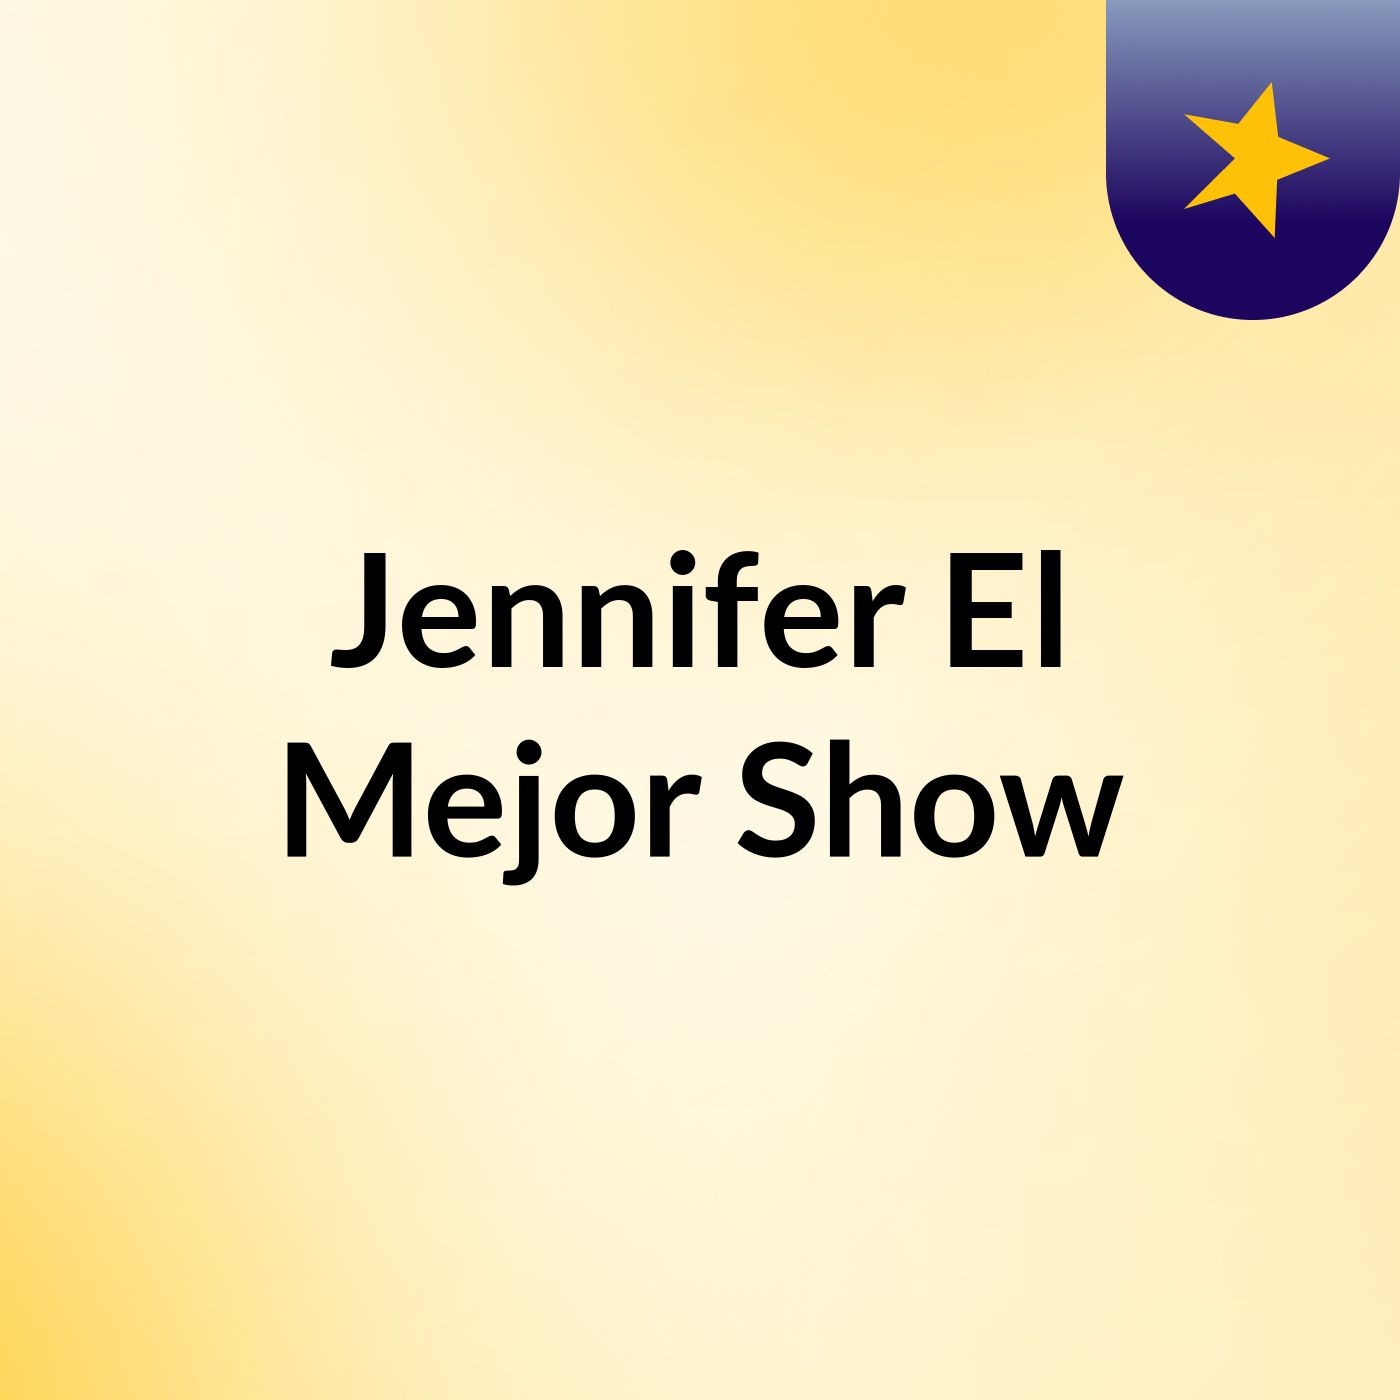 Jennifer El Mejor Show